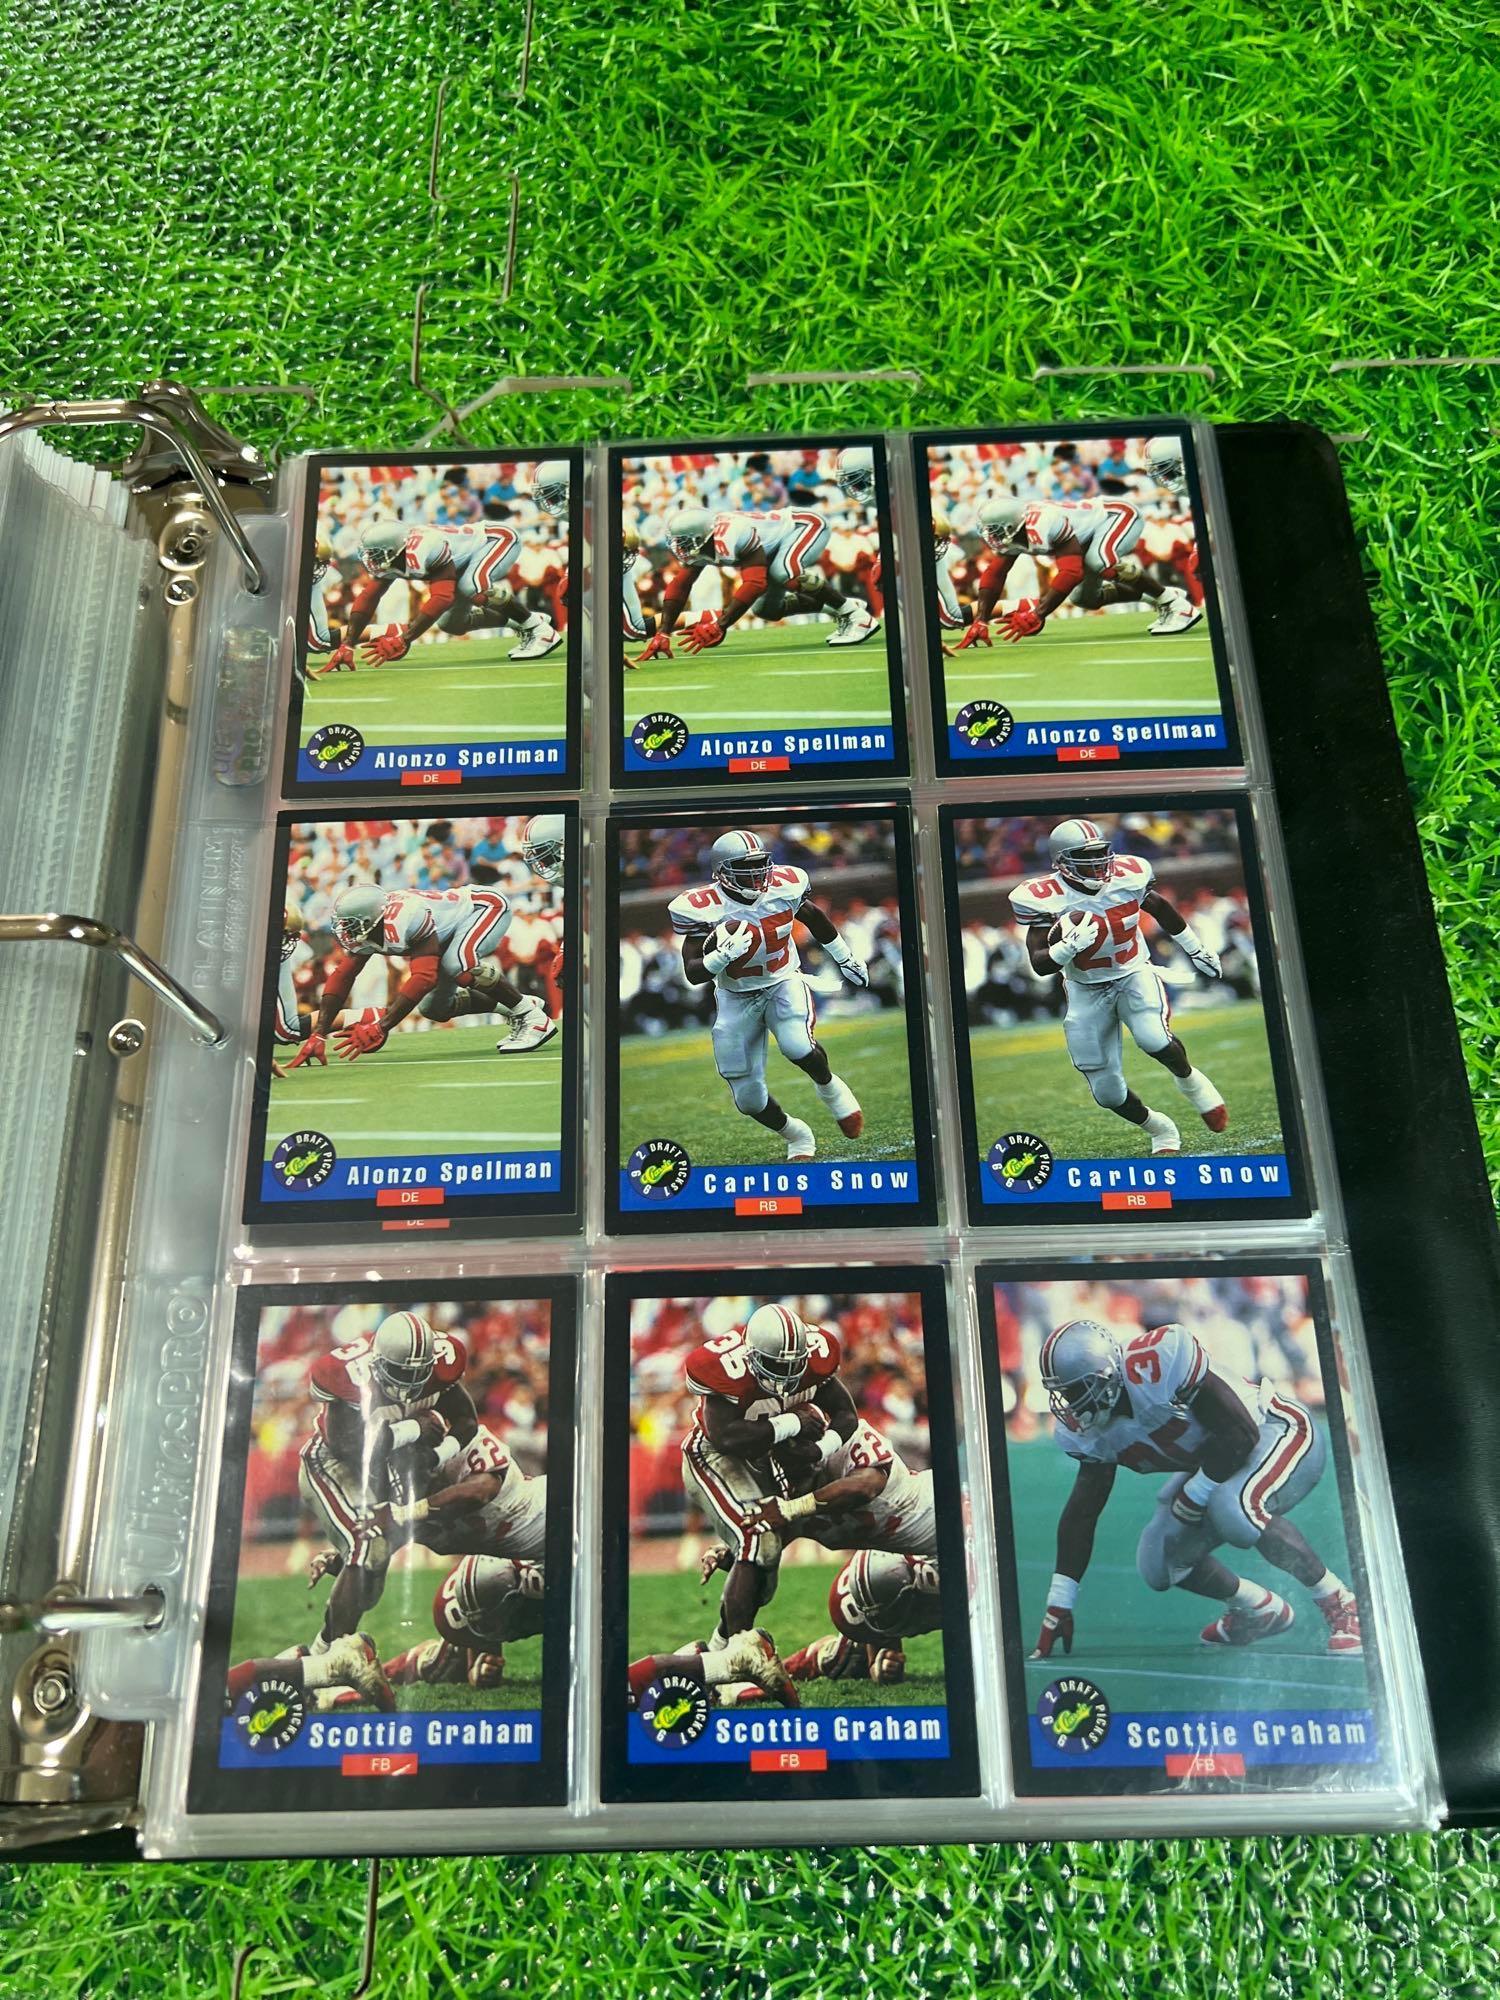 1970s-92 OSU Buckeye football cards